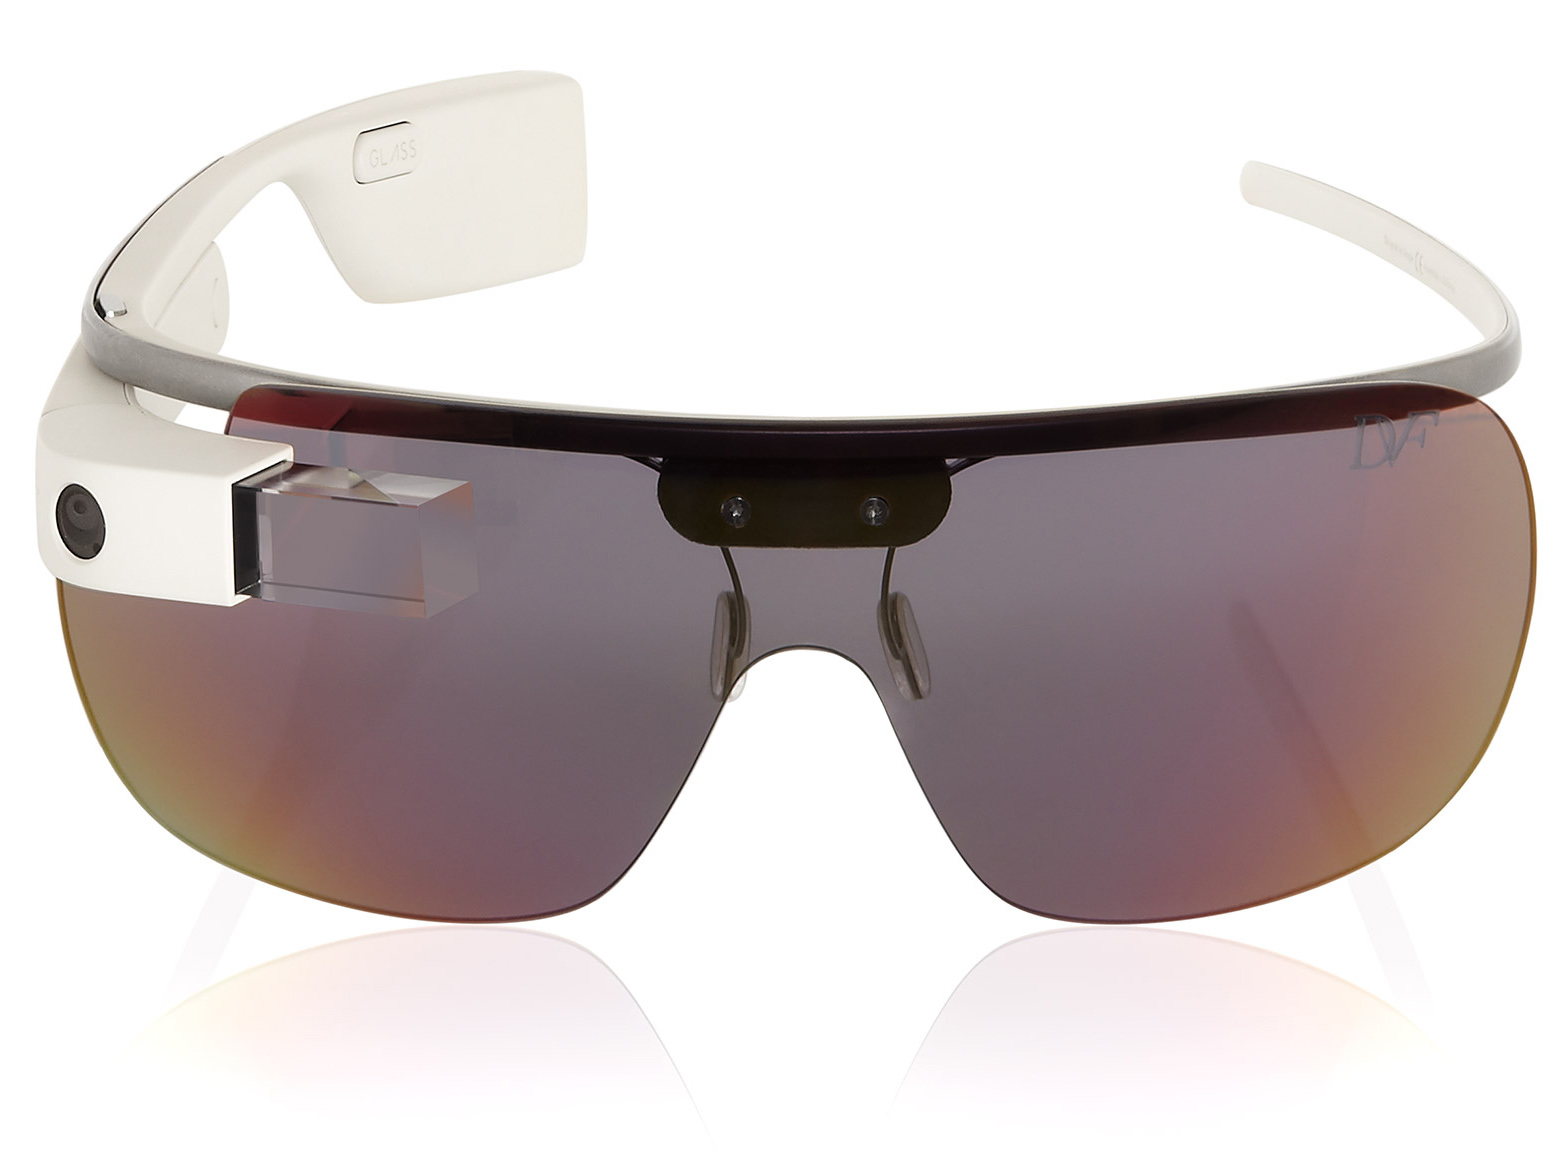 Google Glass by Diane von Furstenberg